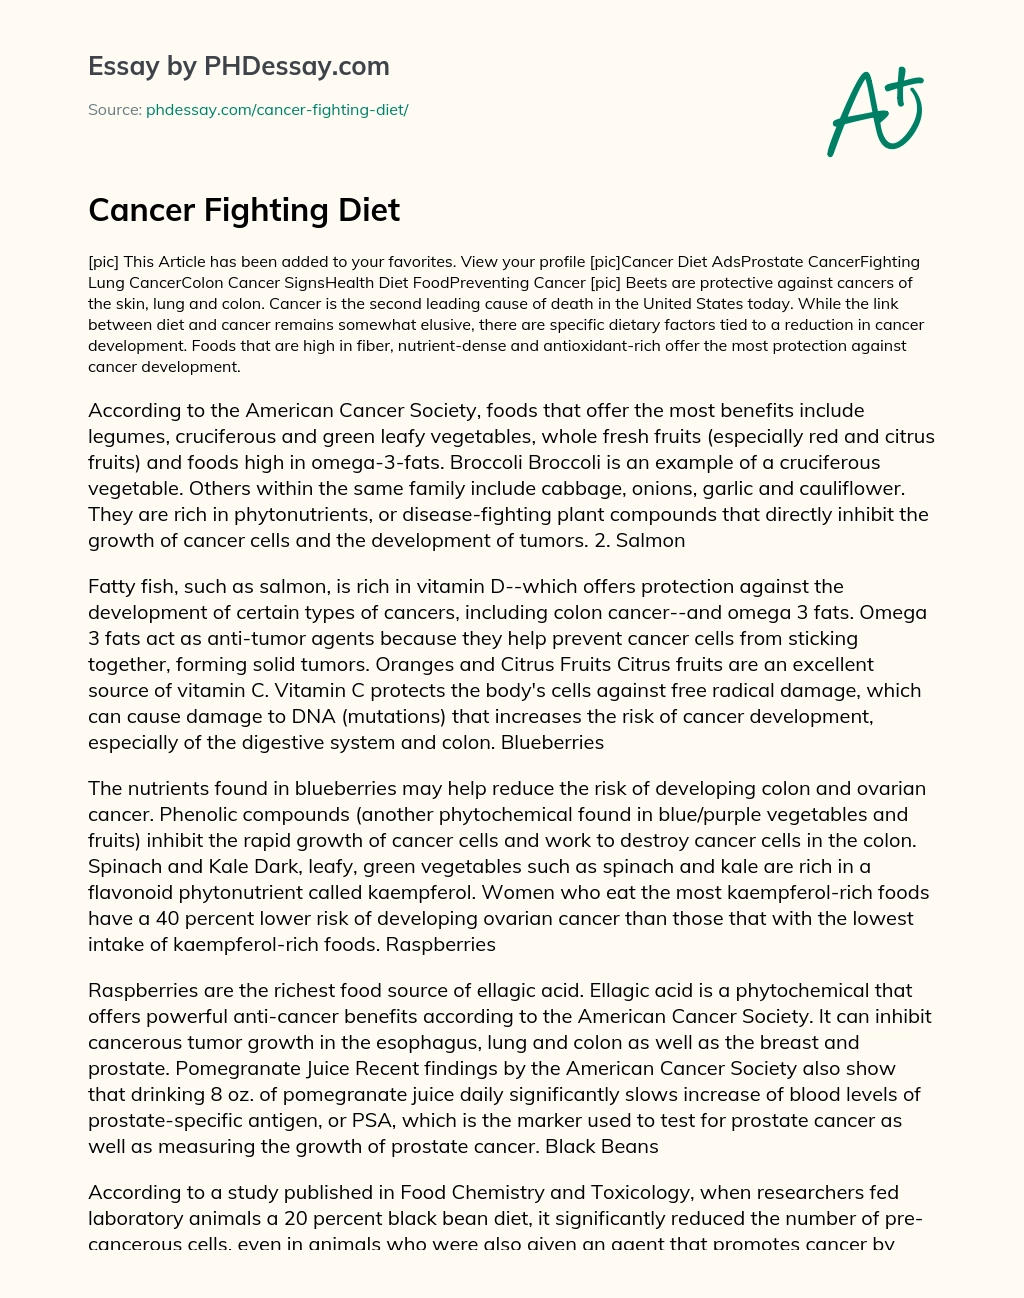 Cancer Fighting Diet essay